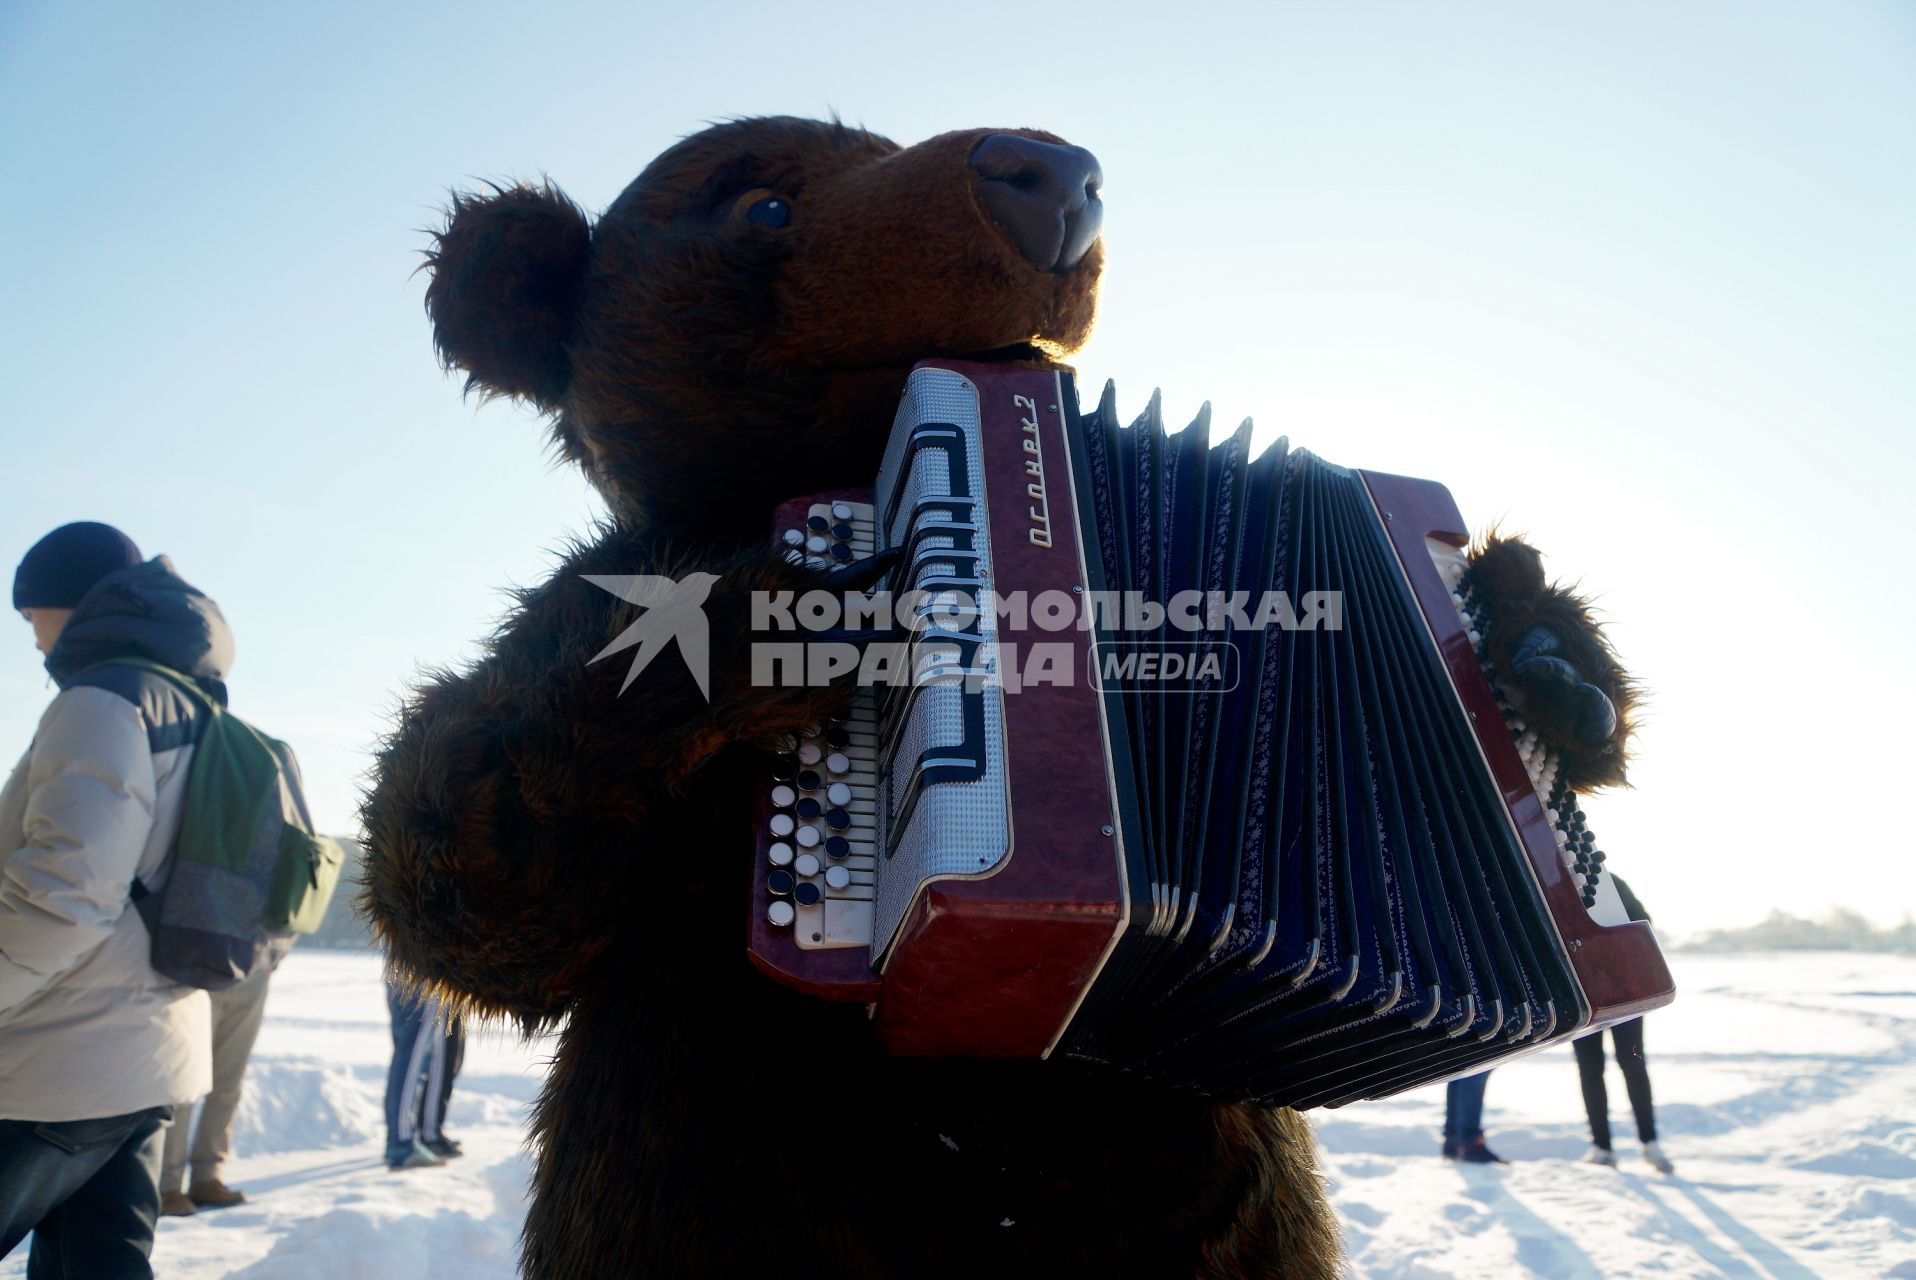 Екатеринбург. Медведь играет на баяне во время крещенских купаний